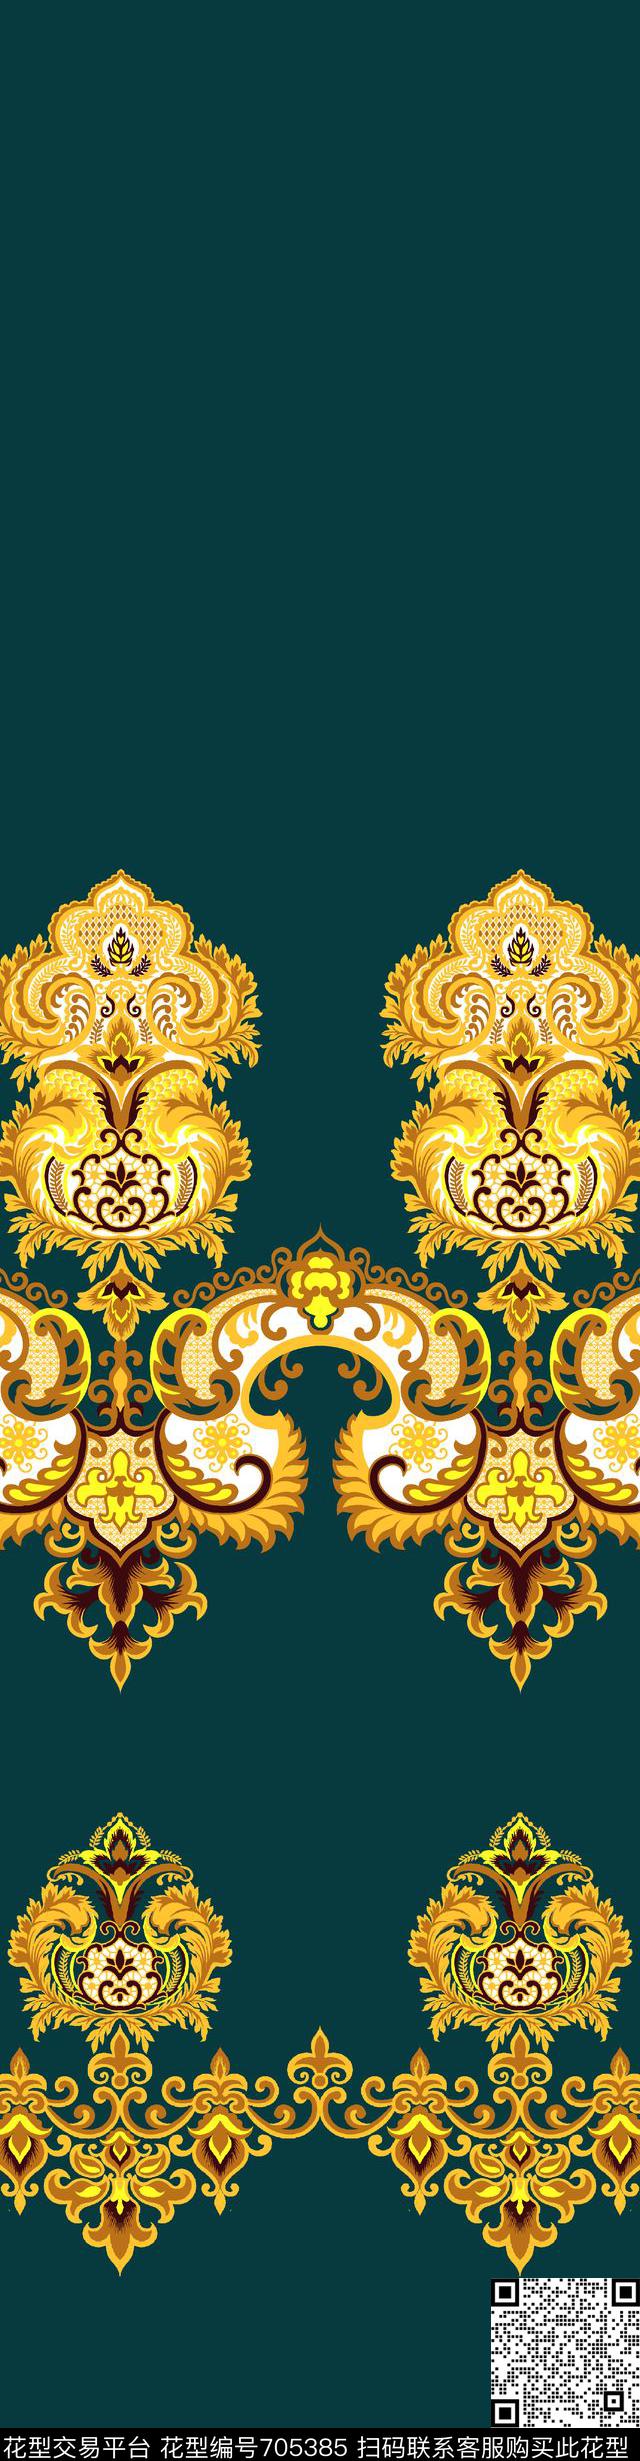 004.jpg - 705385 - 欧式 法式 美式 - 传统印花花型 － 窗帘花型设计 － 瓦栏